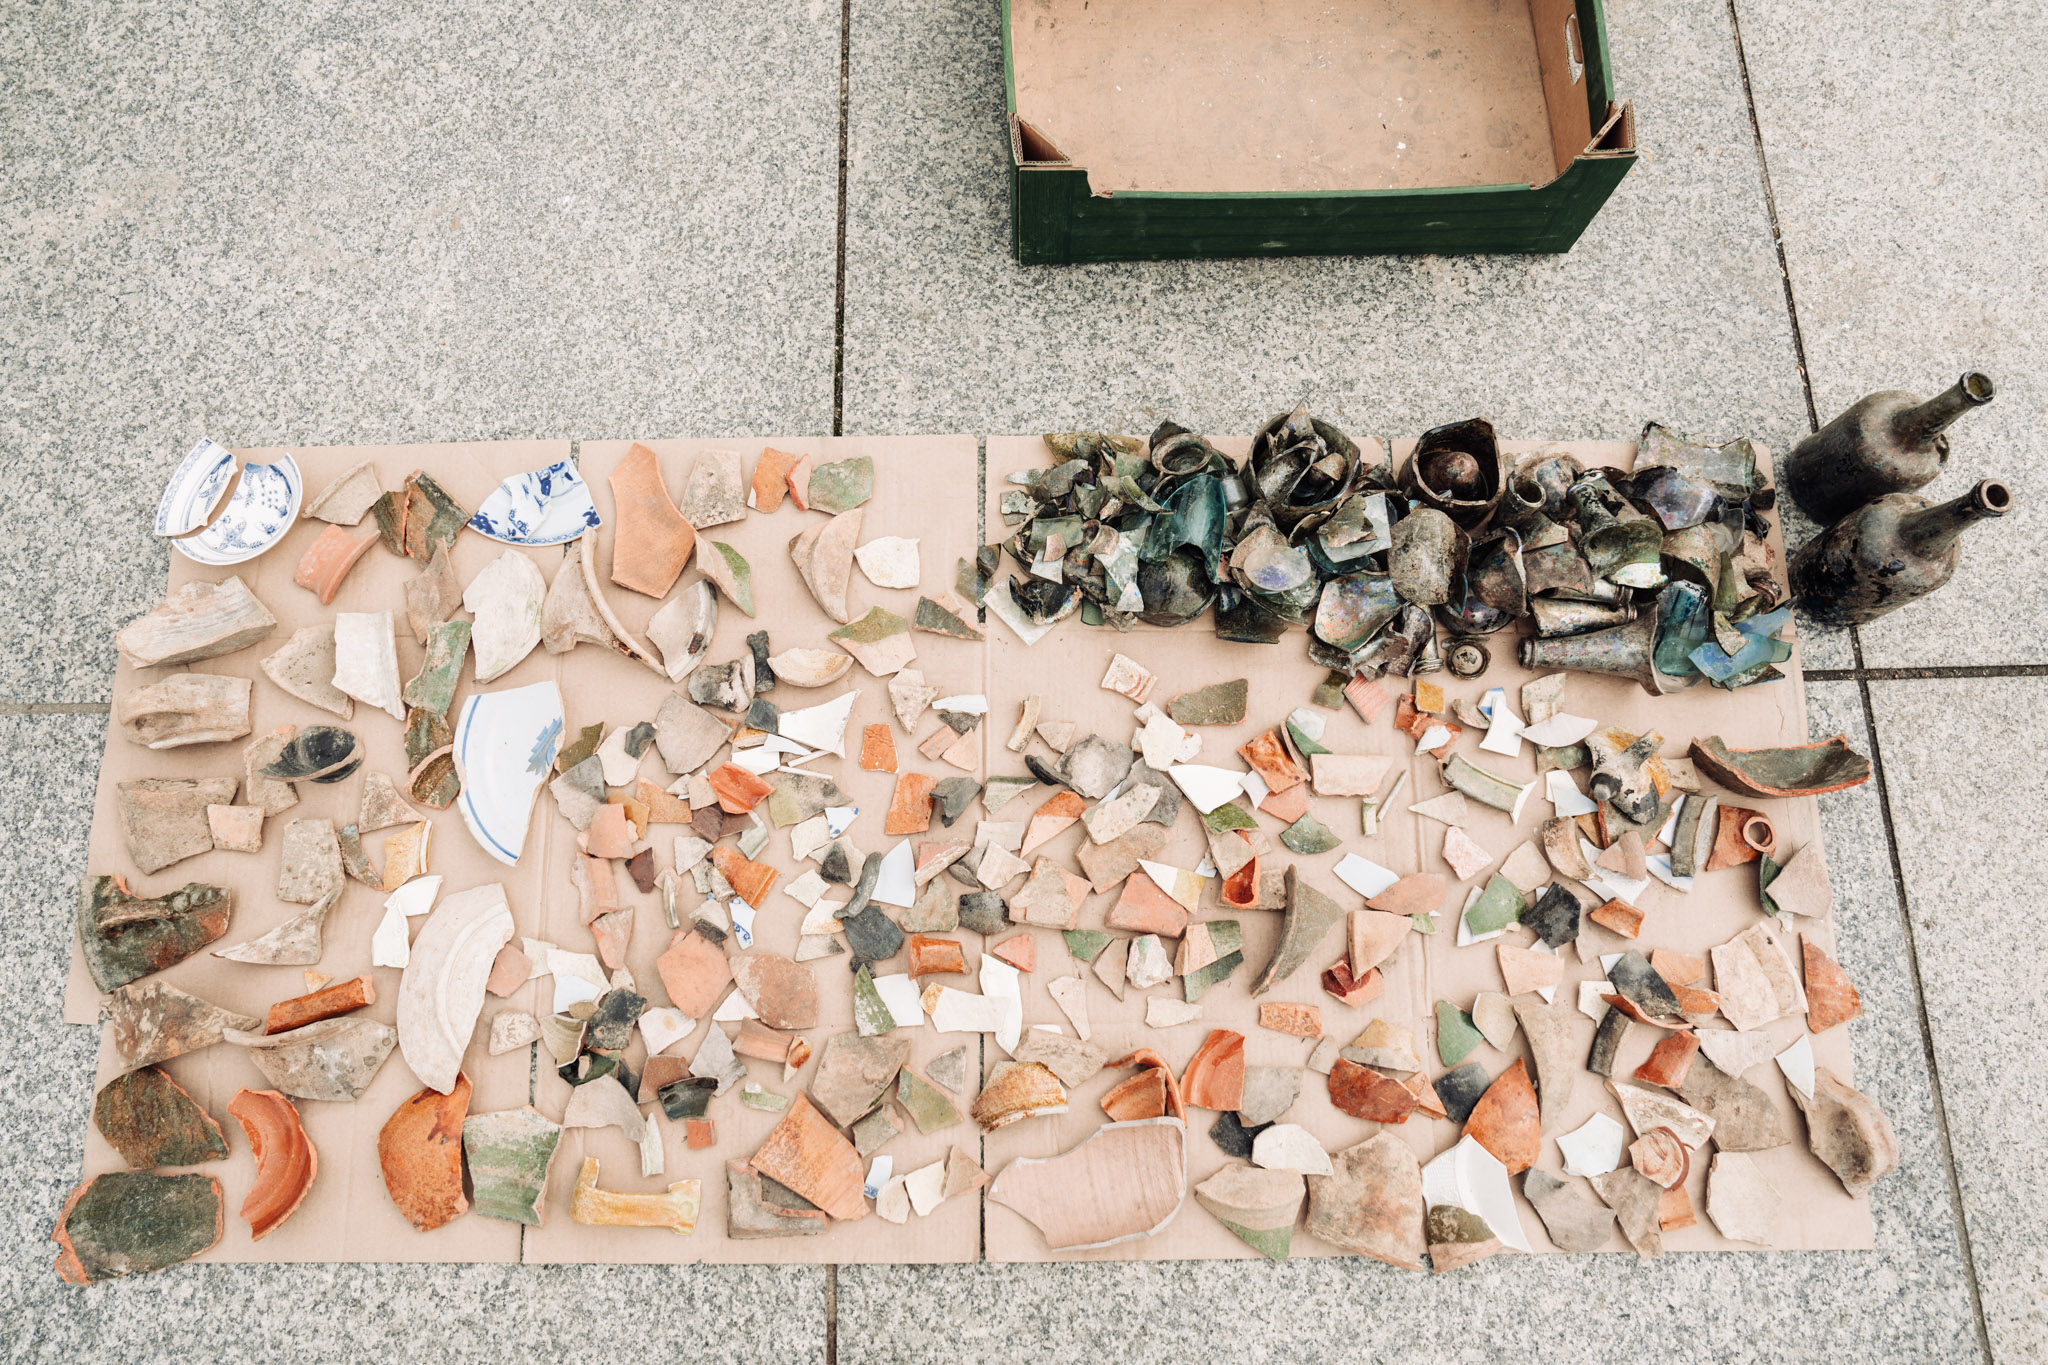 Liczne fragmenty ceramiki i szkła oraz dwie butelki, czyli zagadki archeologiczne czekające na rozwikłanie. Drobne elementy rozłożone są na tekturze znajdującej się na granitowych płytach.